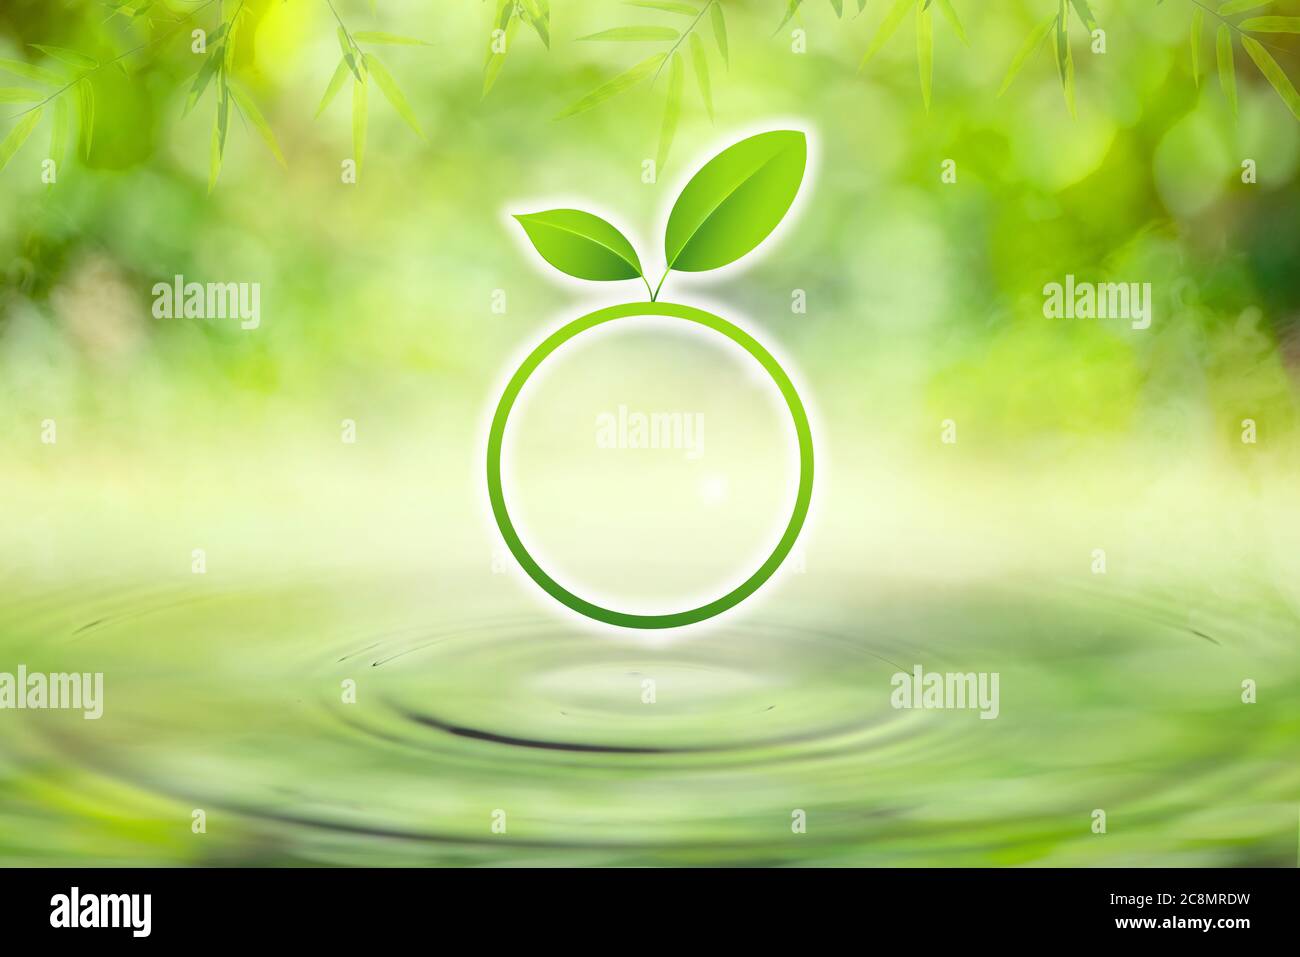 Cerchio di foglia verde sulla goccia che cade in acqua con increspature con sfondo verde chiaro bokeh. Foto Stock